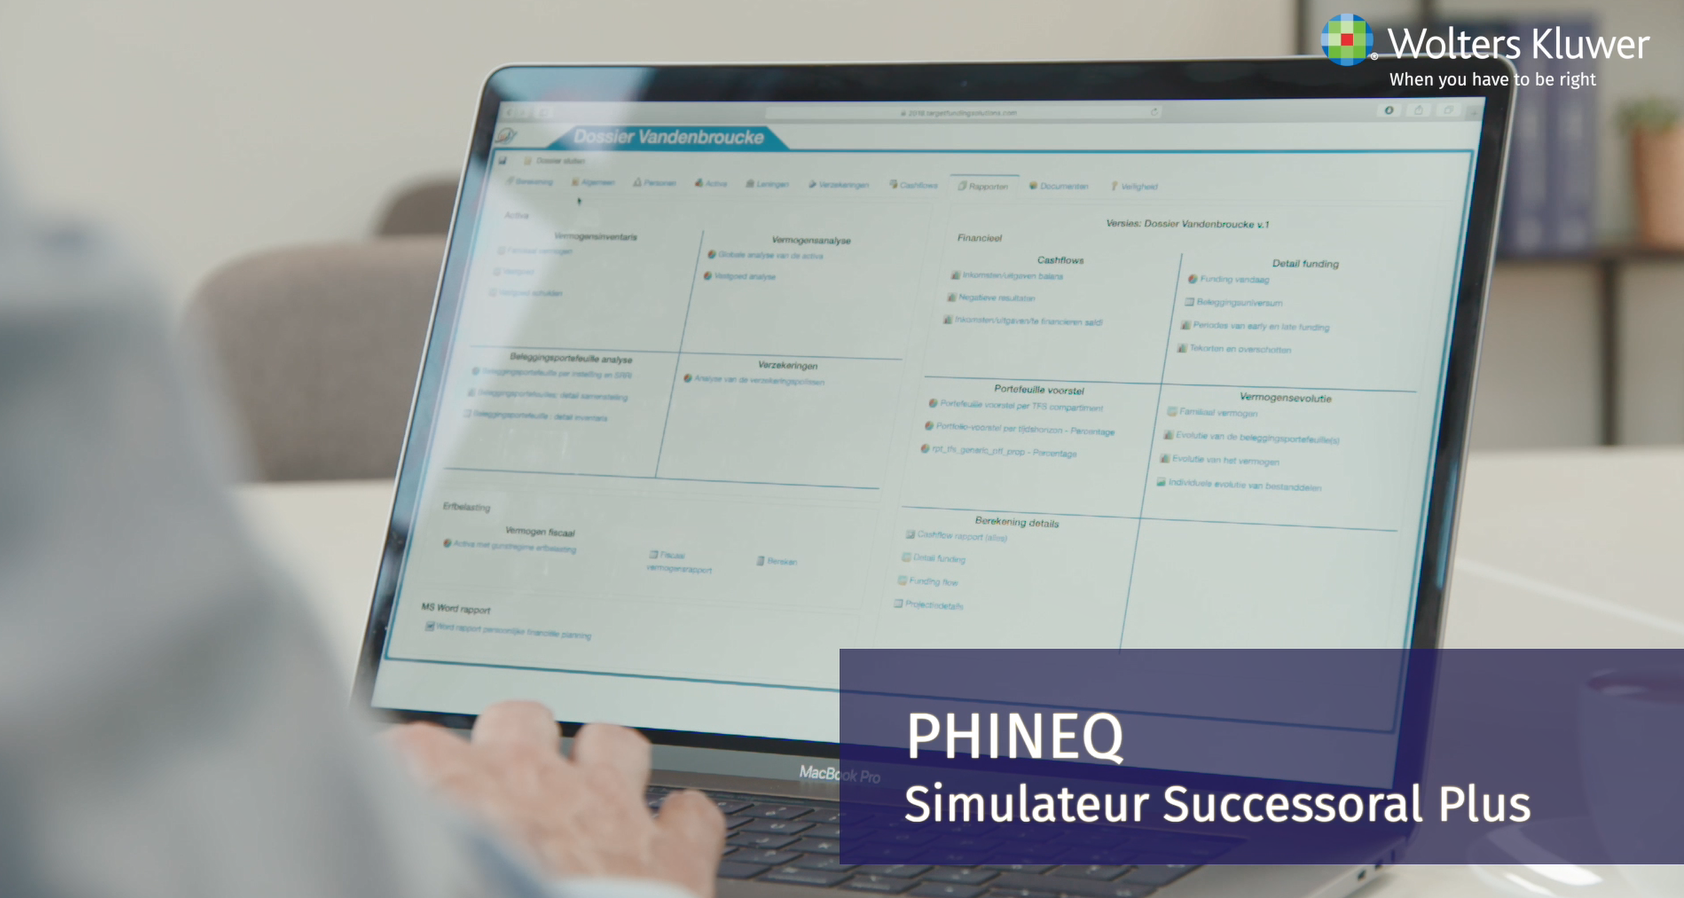 Phineq Simulateur Successoral Plus video 